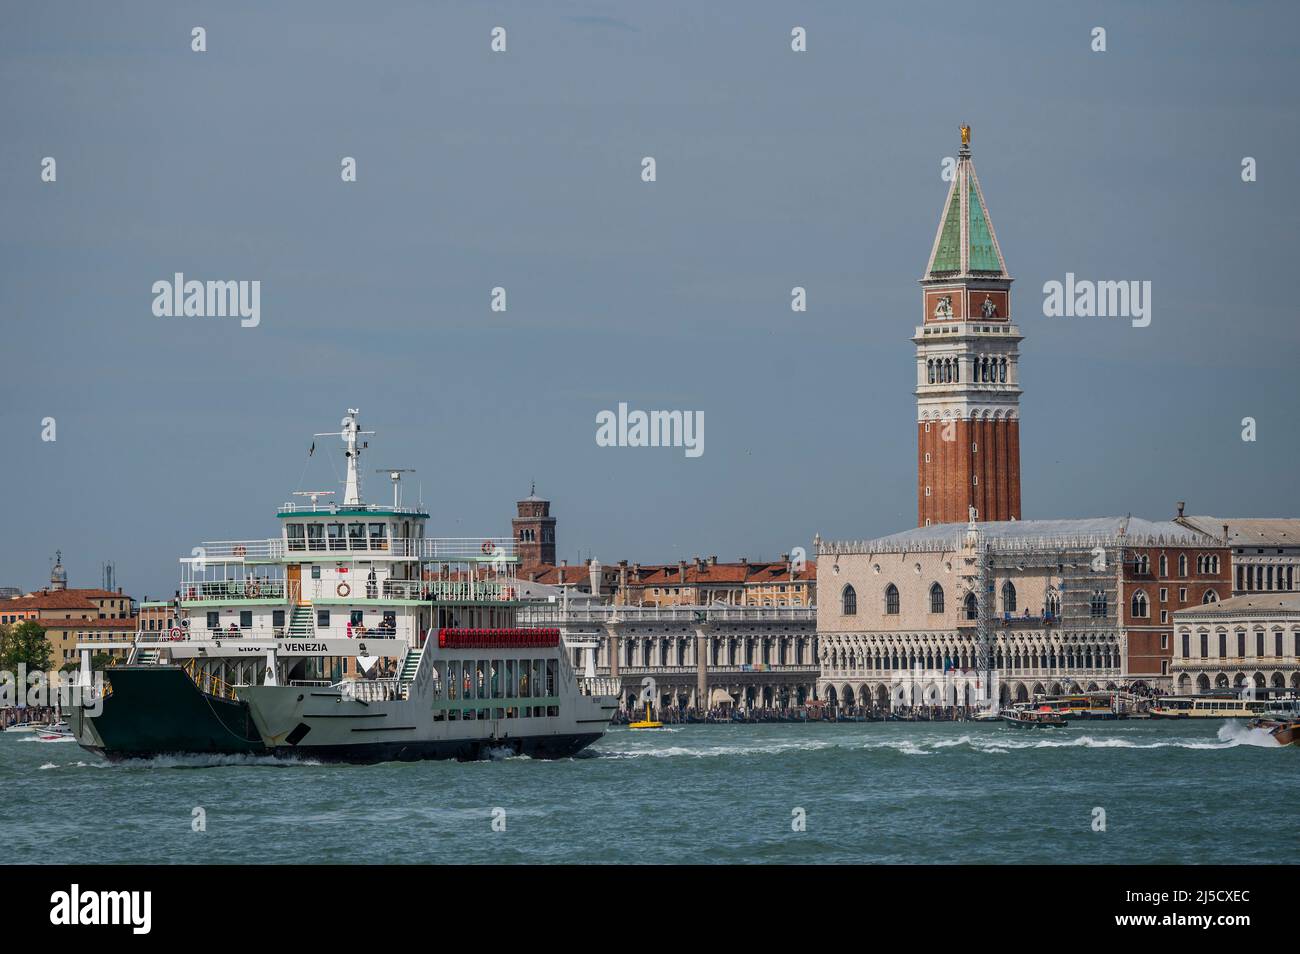 Un ferry pour véhicule sur la Canale di San Marco en face du Campanile de Saint Marc, Campanile di San Marco - les canaux sont les principales artères qui portent toutes les formes de transport d'eau - Venise au début de la Biennale di Venezia en 2022. Banque D'Images